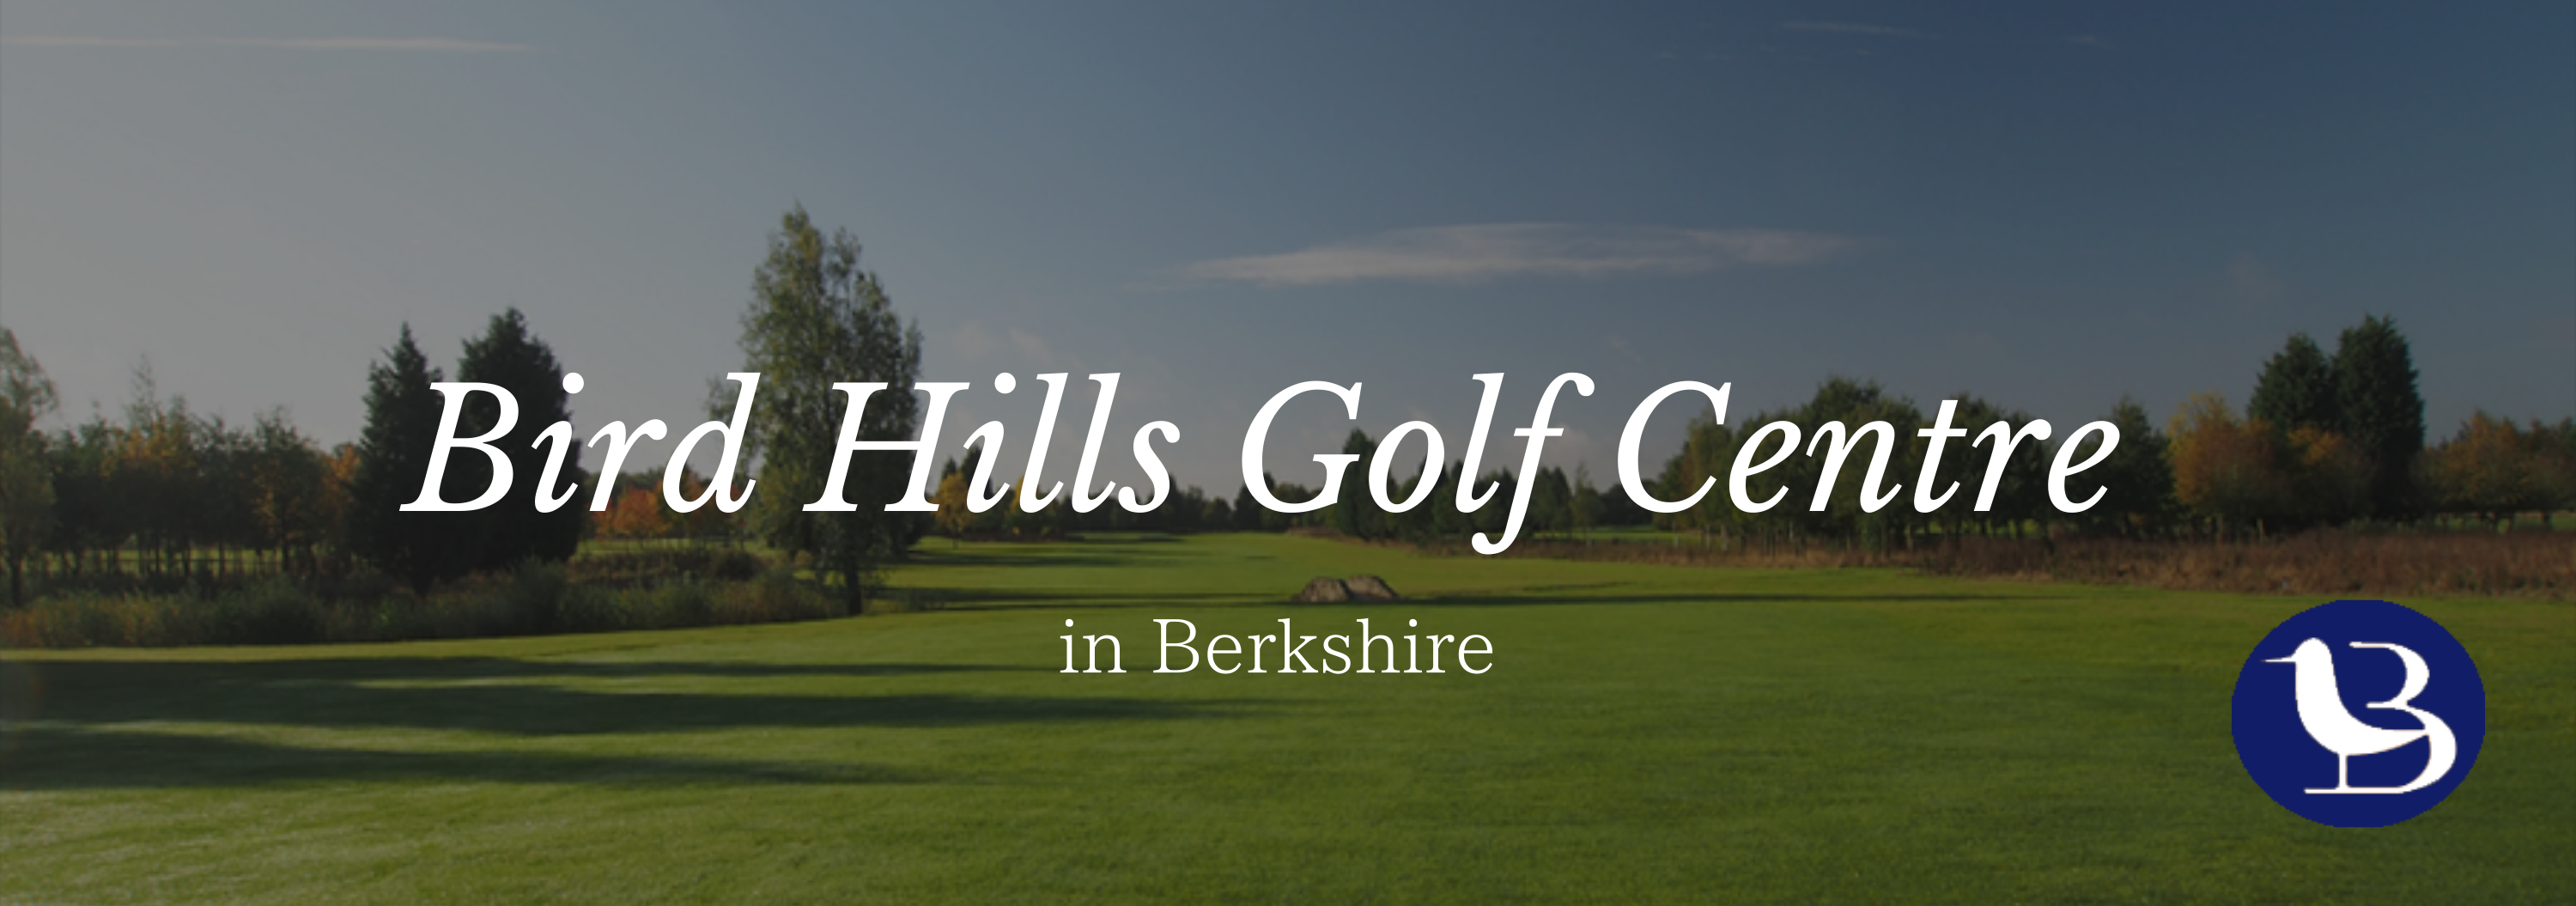 Bird Hills Golf Centre